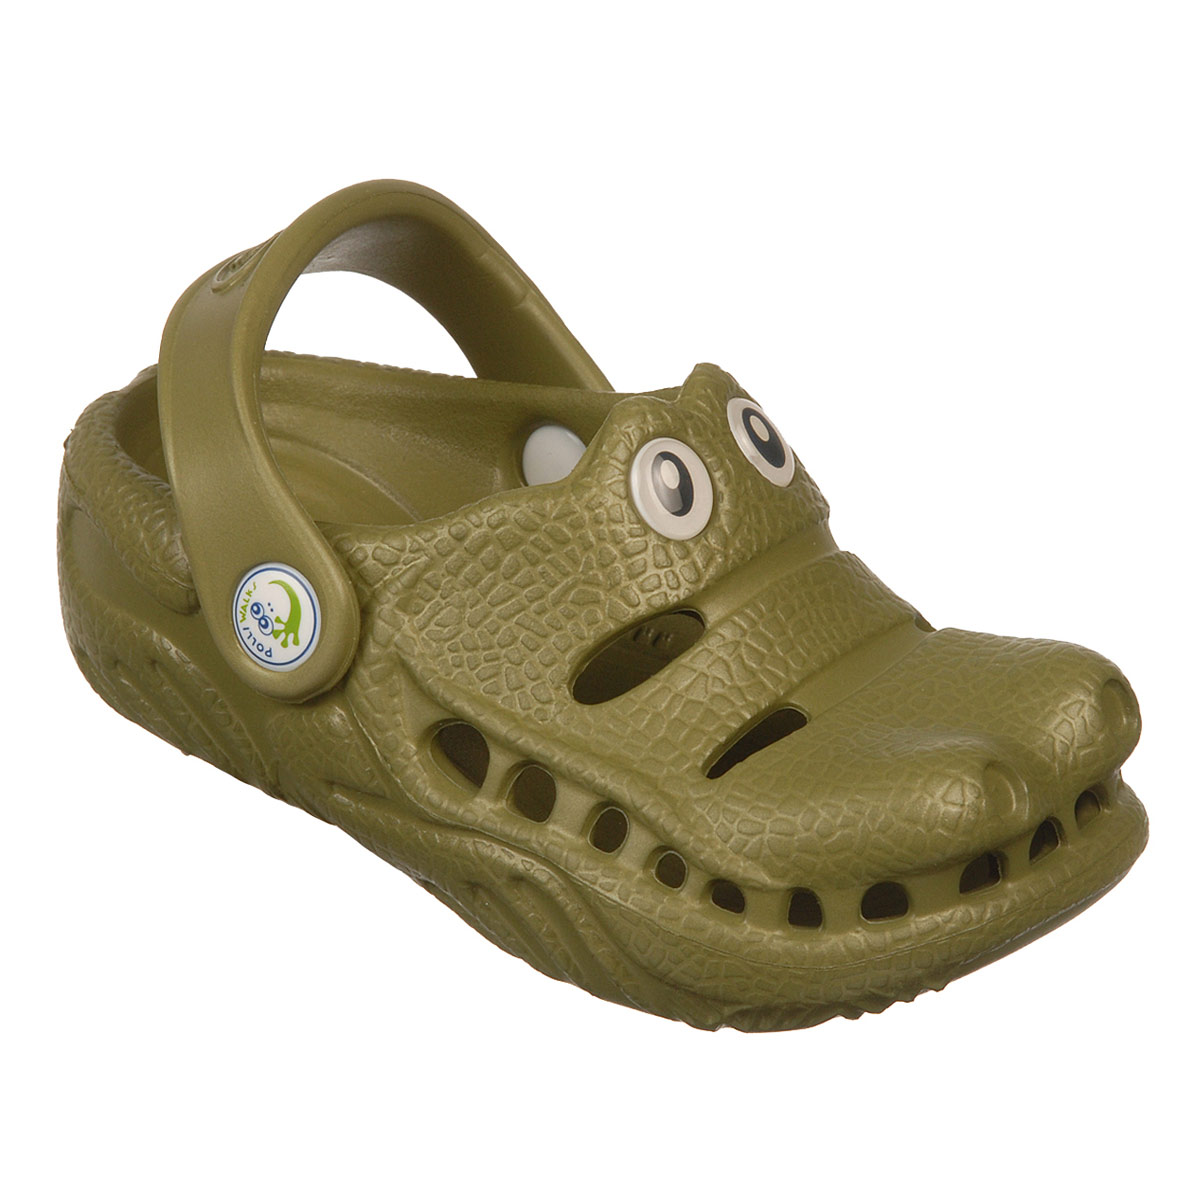 Polliwalks : Toddler shoes Gator ?Green # 12